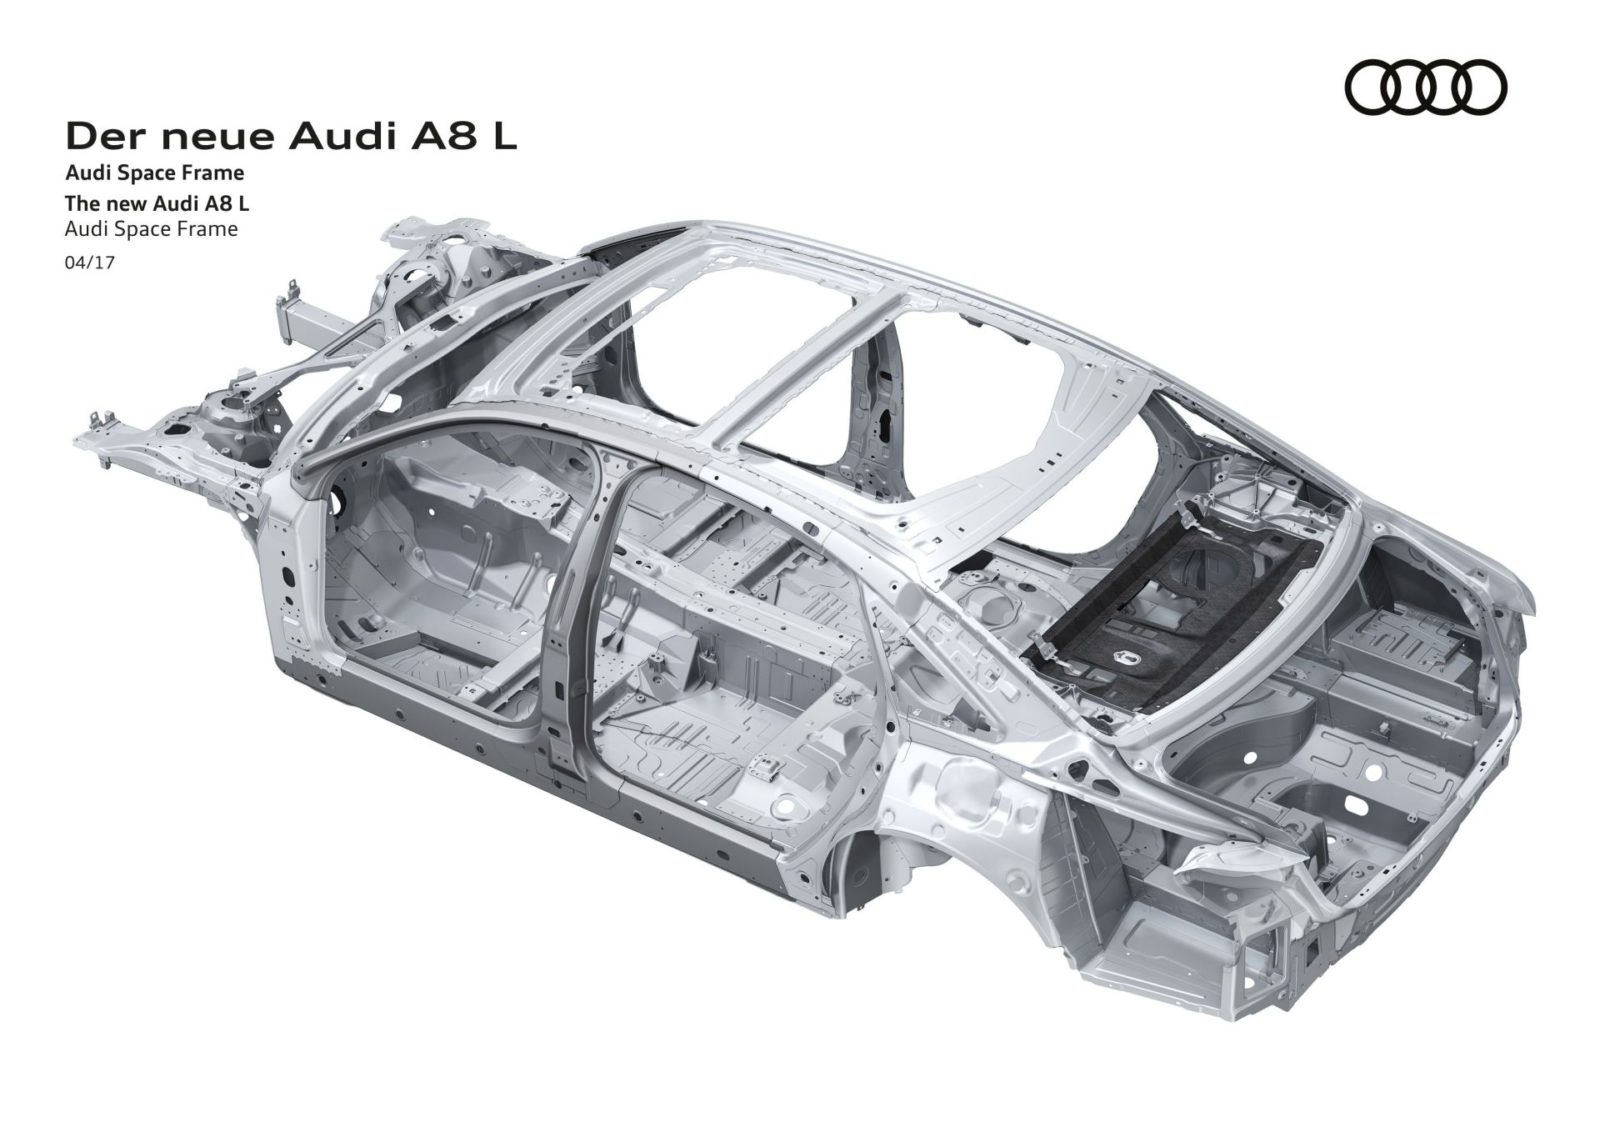 Audi A8: Audi Space Frame